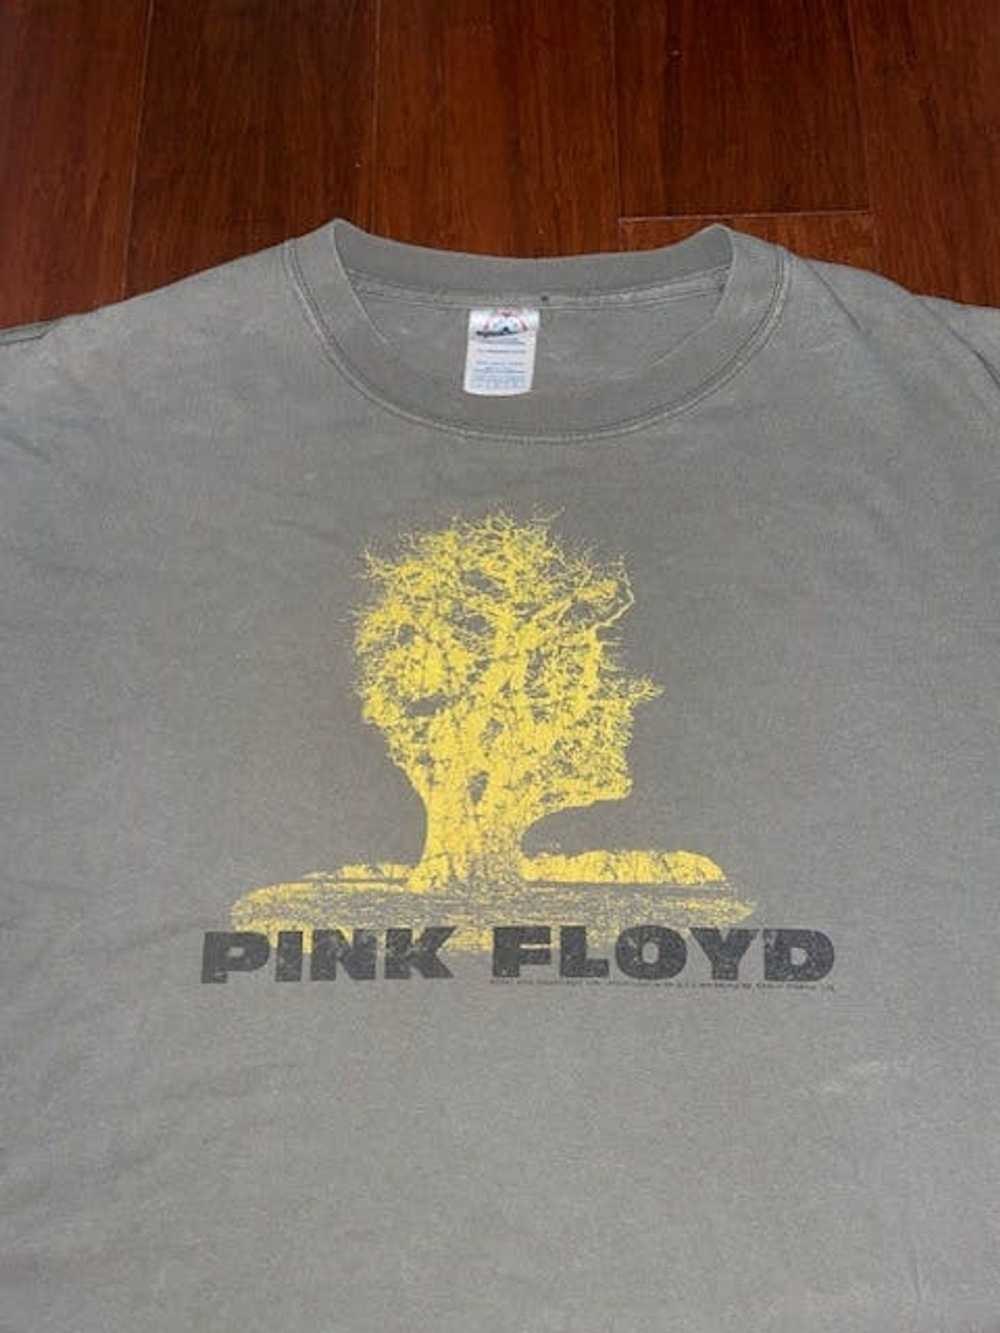 Pink Floyd Vintage Pink Floyd Band Tee - image 2